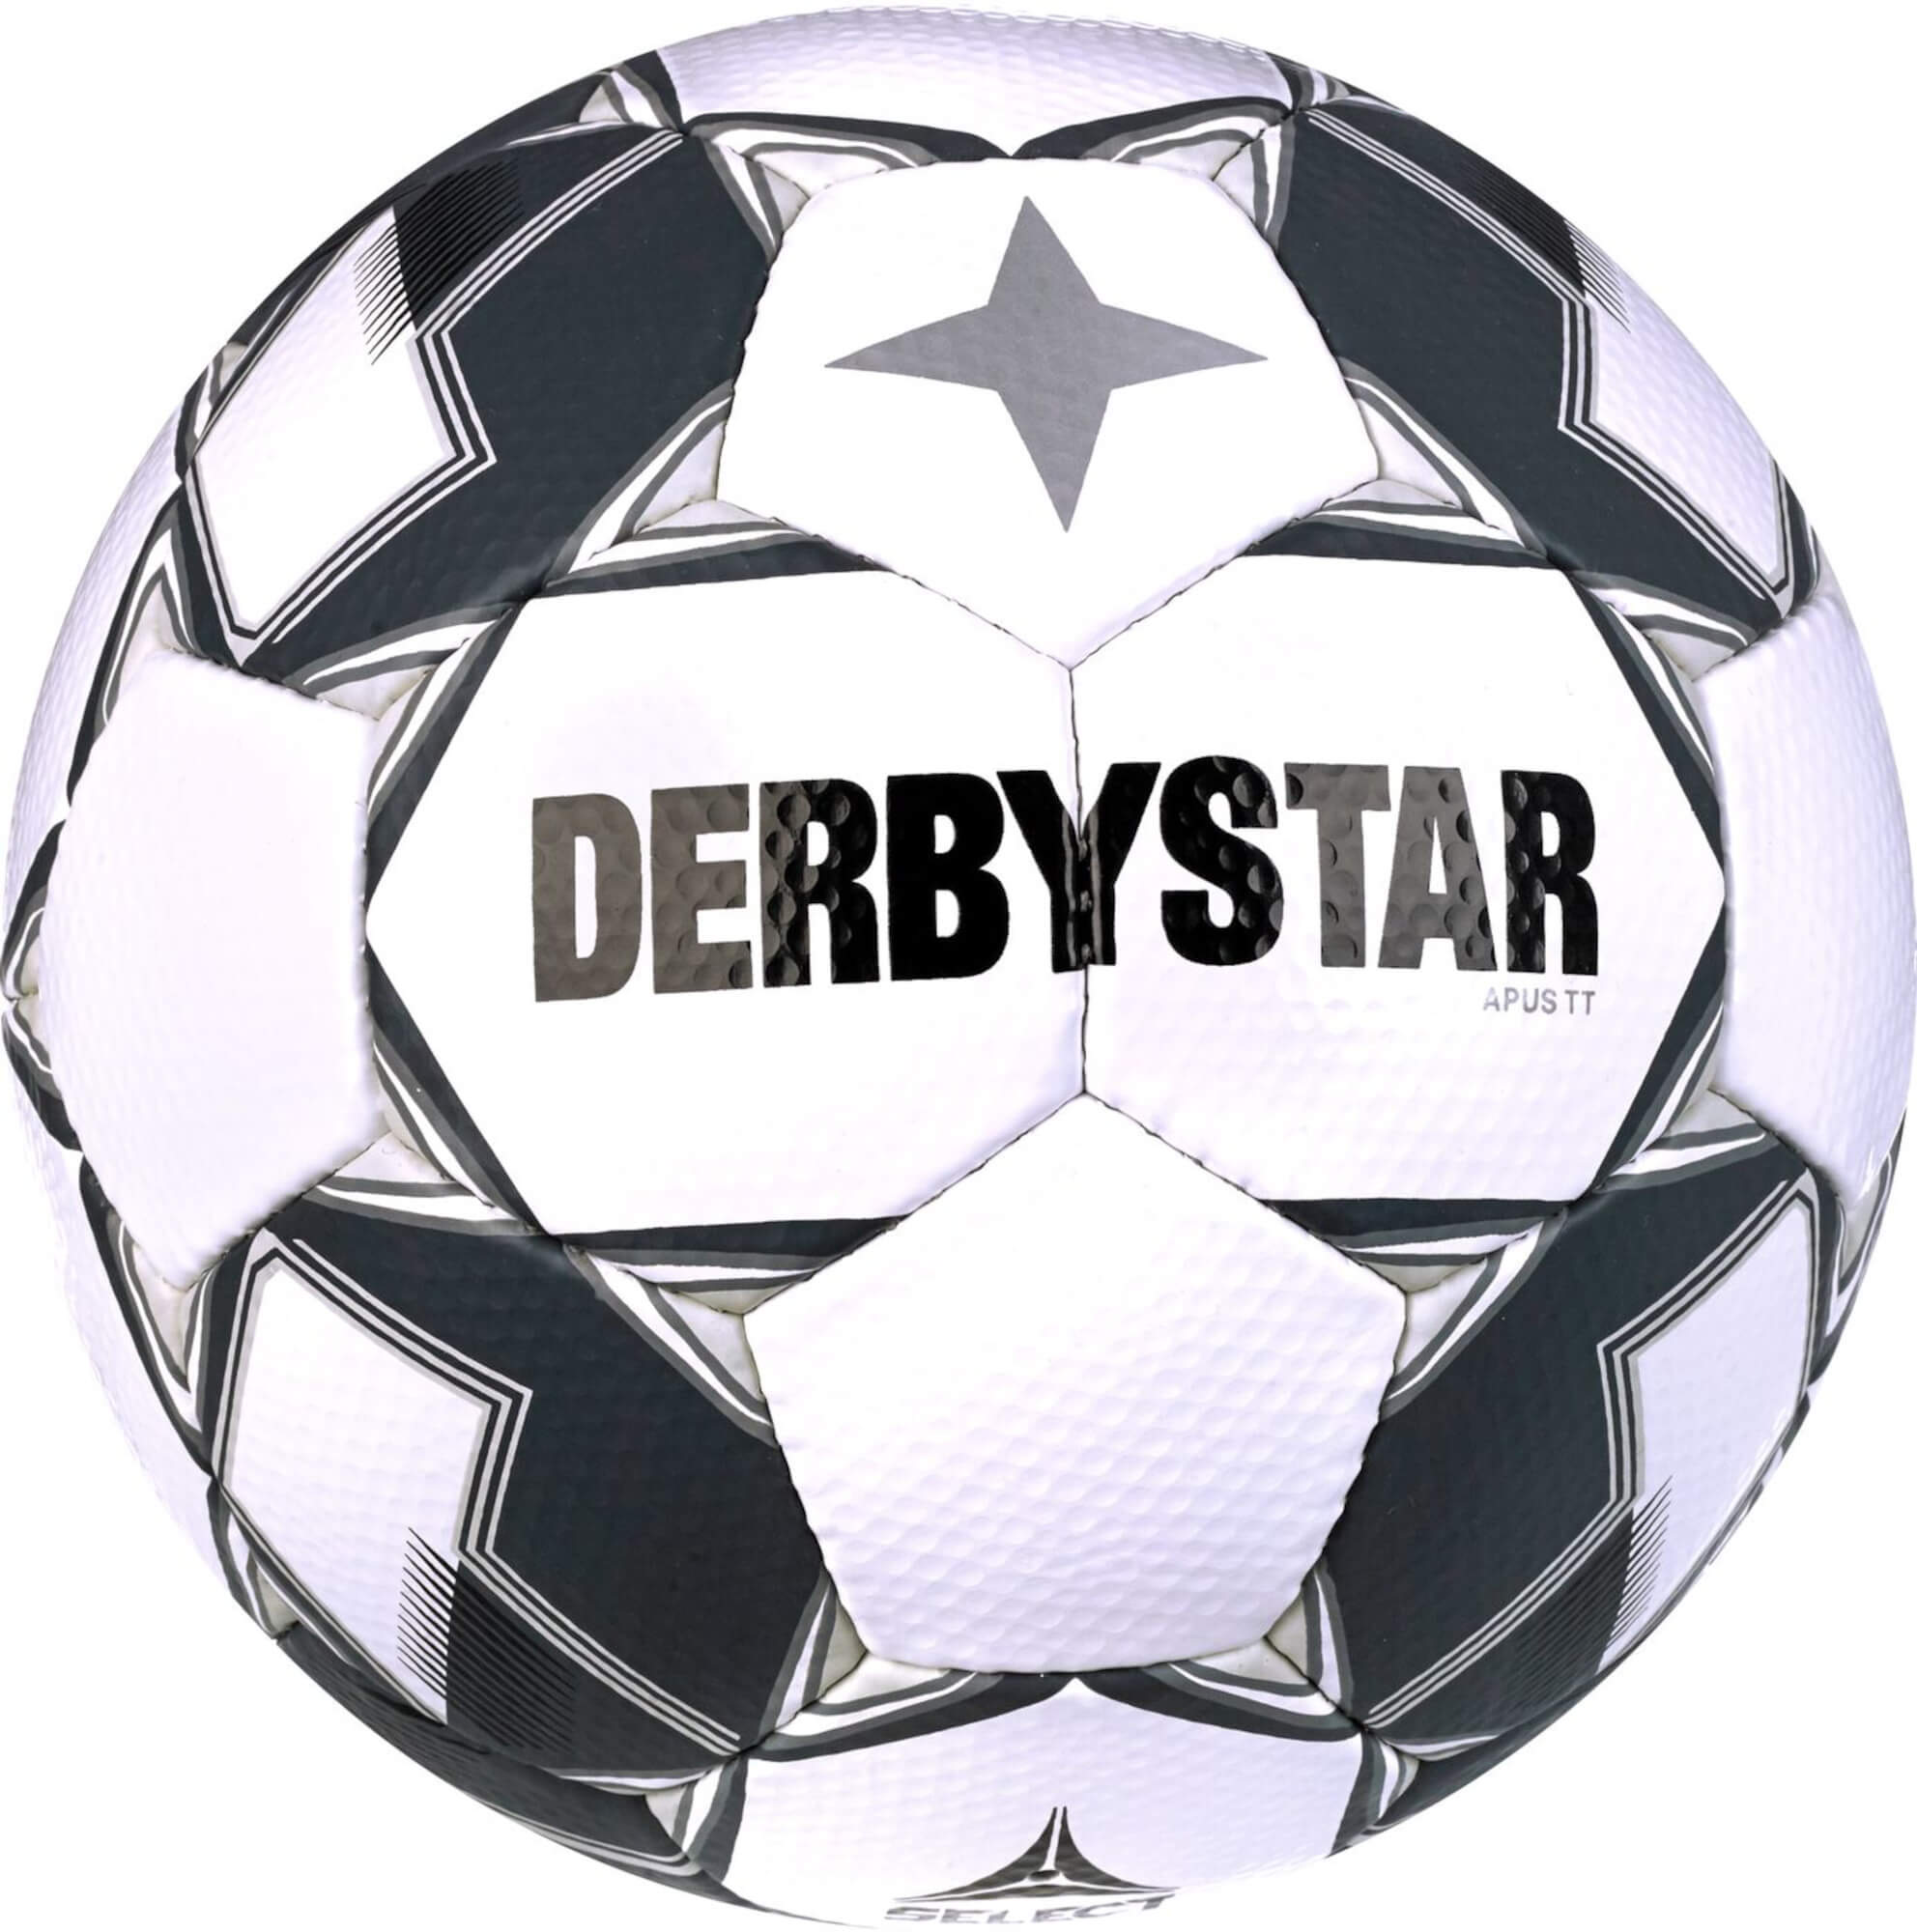 Derbystar Trainingsball APUS TT v23